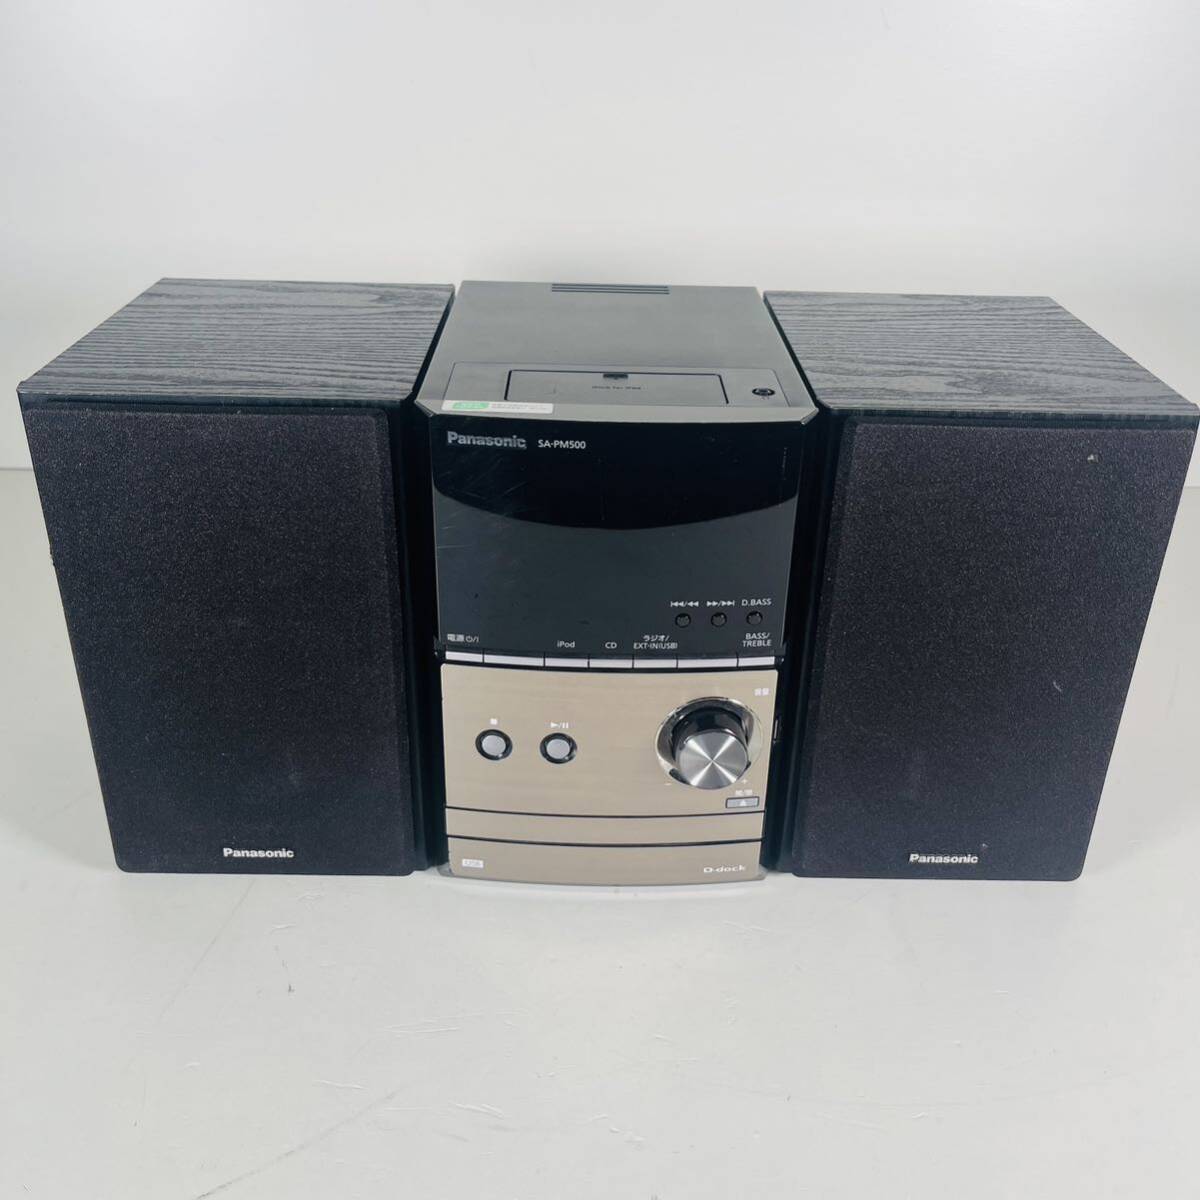 Panasonic パナソニック システムコンポ ミニコンポ CDステレオシステム MD コンポ SC-PM500-K SA-PM500 ブラック の画像3